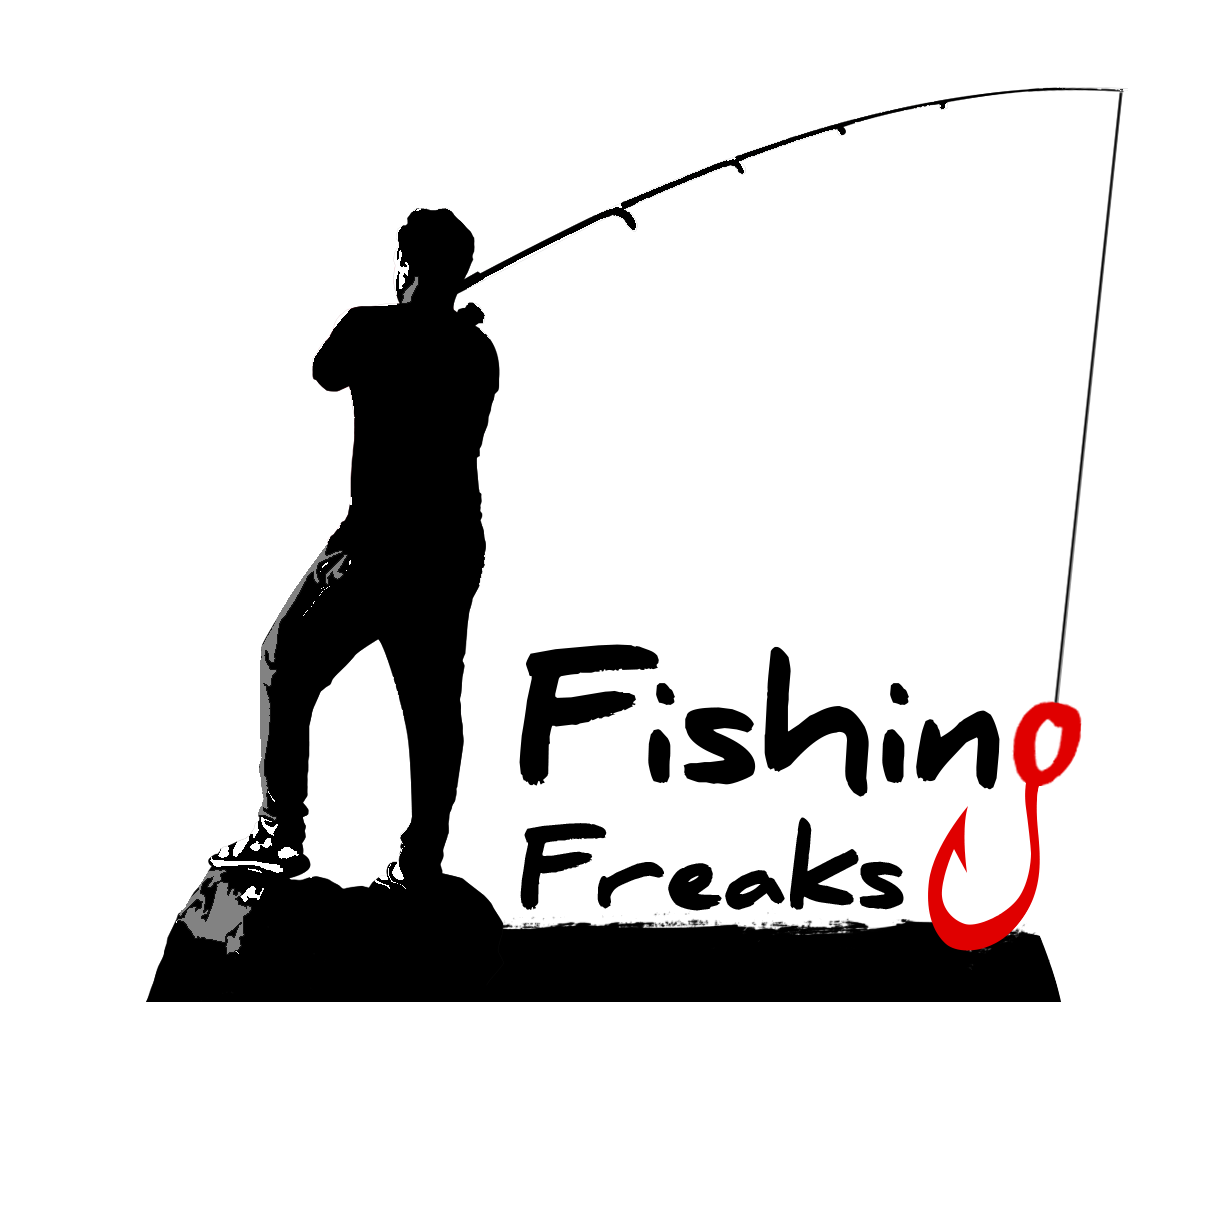 Fishing Freaks